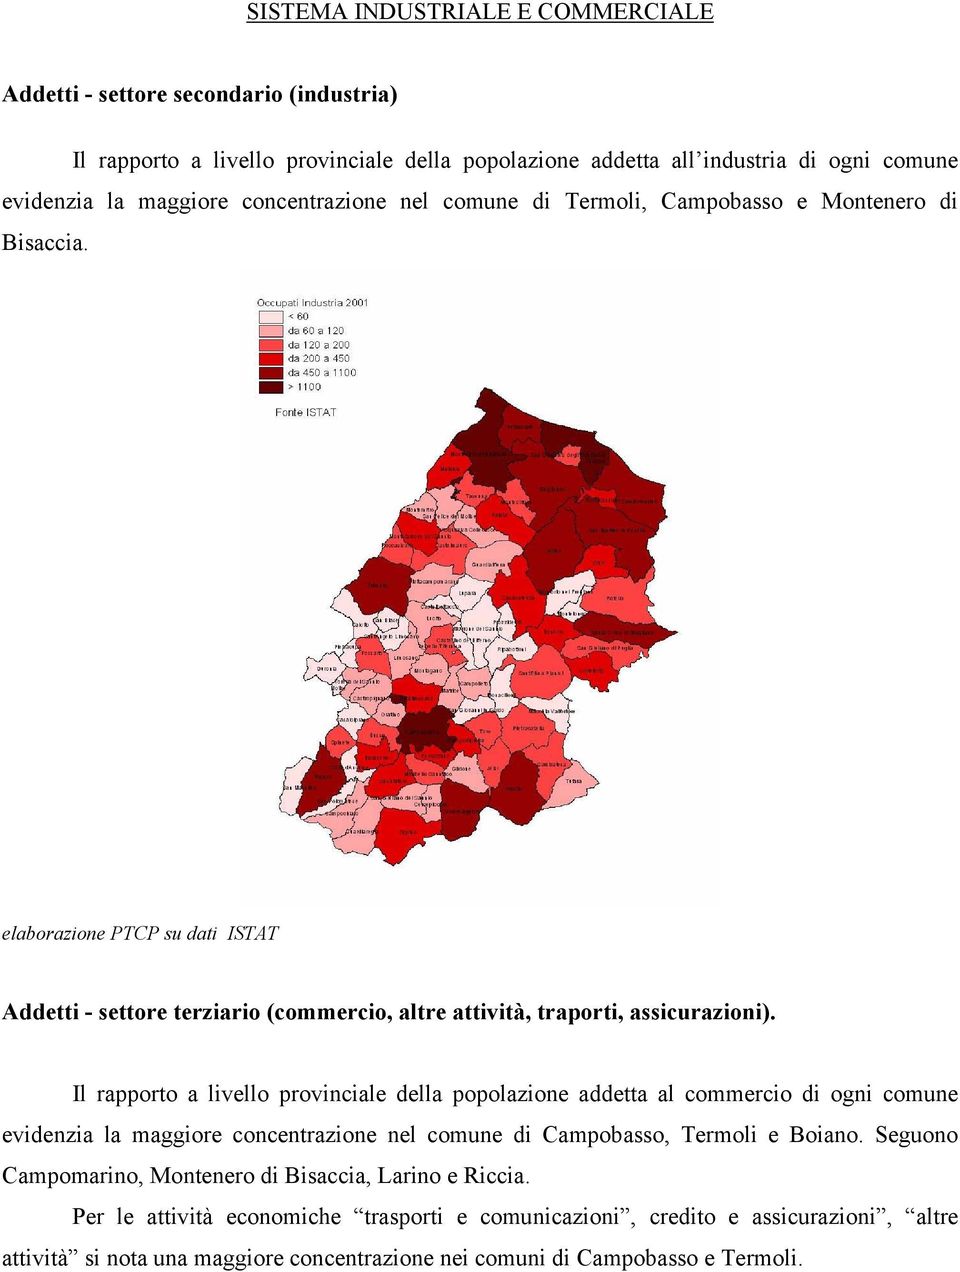 Il rapporto a livello provinciale della popolazione addetta al commercio di ogni comune evidenzia la maggiore concentrazione nel comune di Campobasso, Termoli e Boiano.